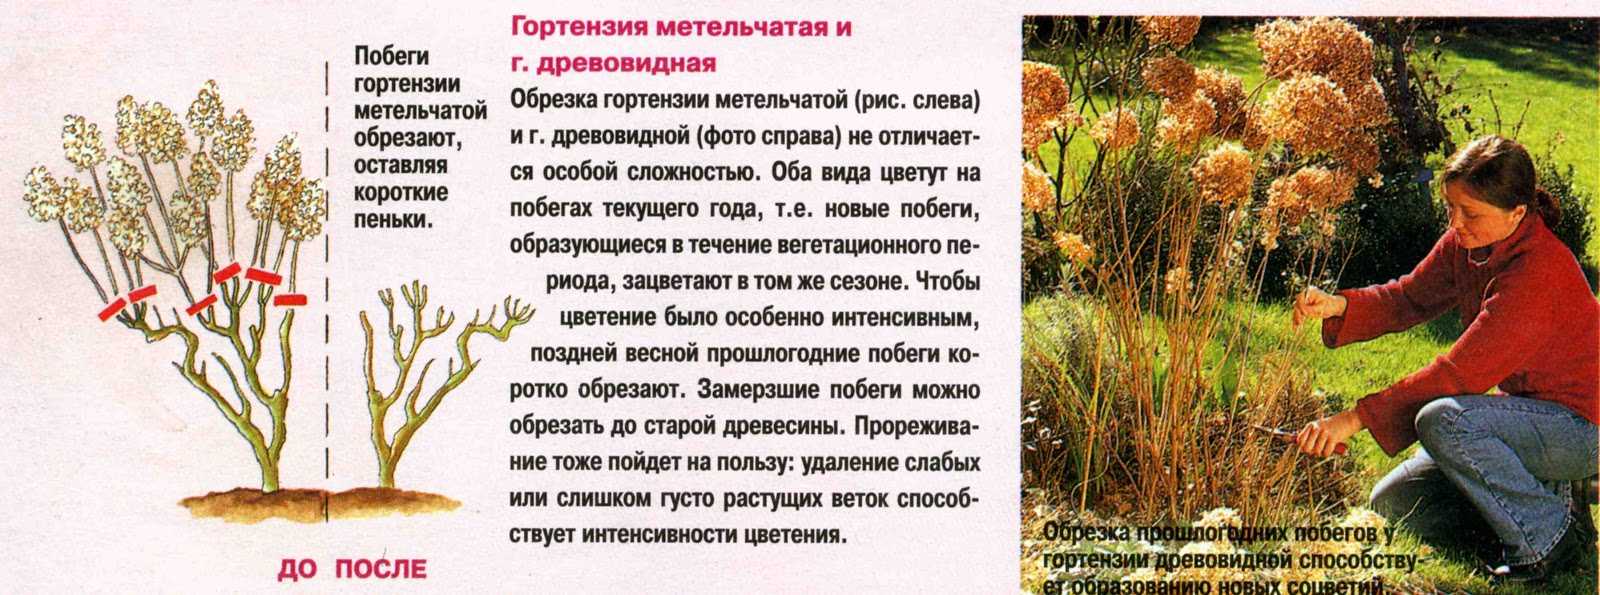 Гортензия садовая: посадка и уход в открытом грунте, зимовка, размножение, фото